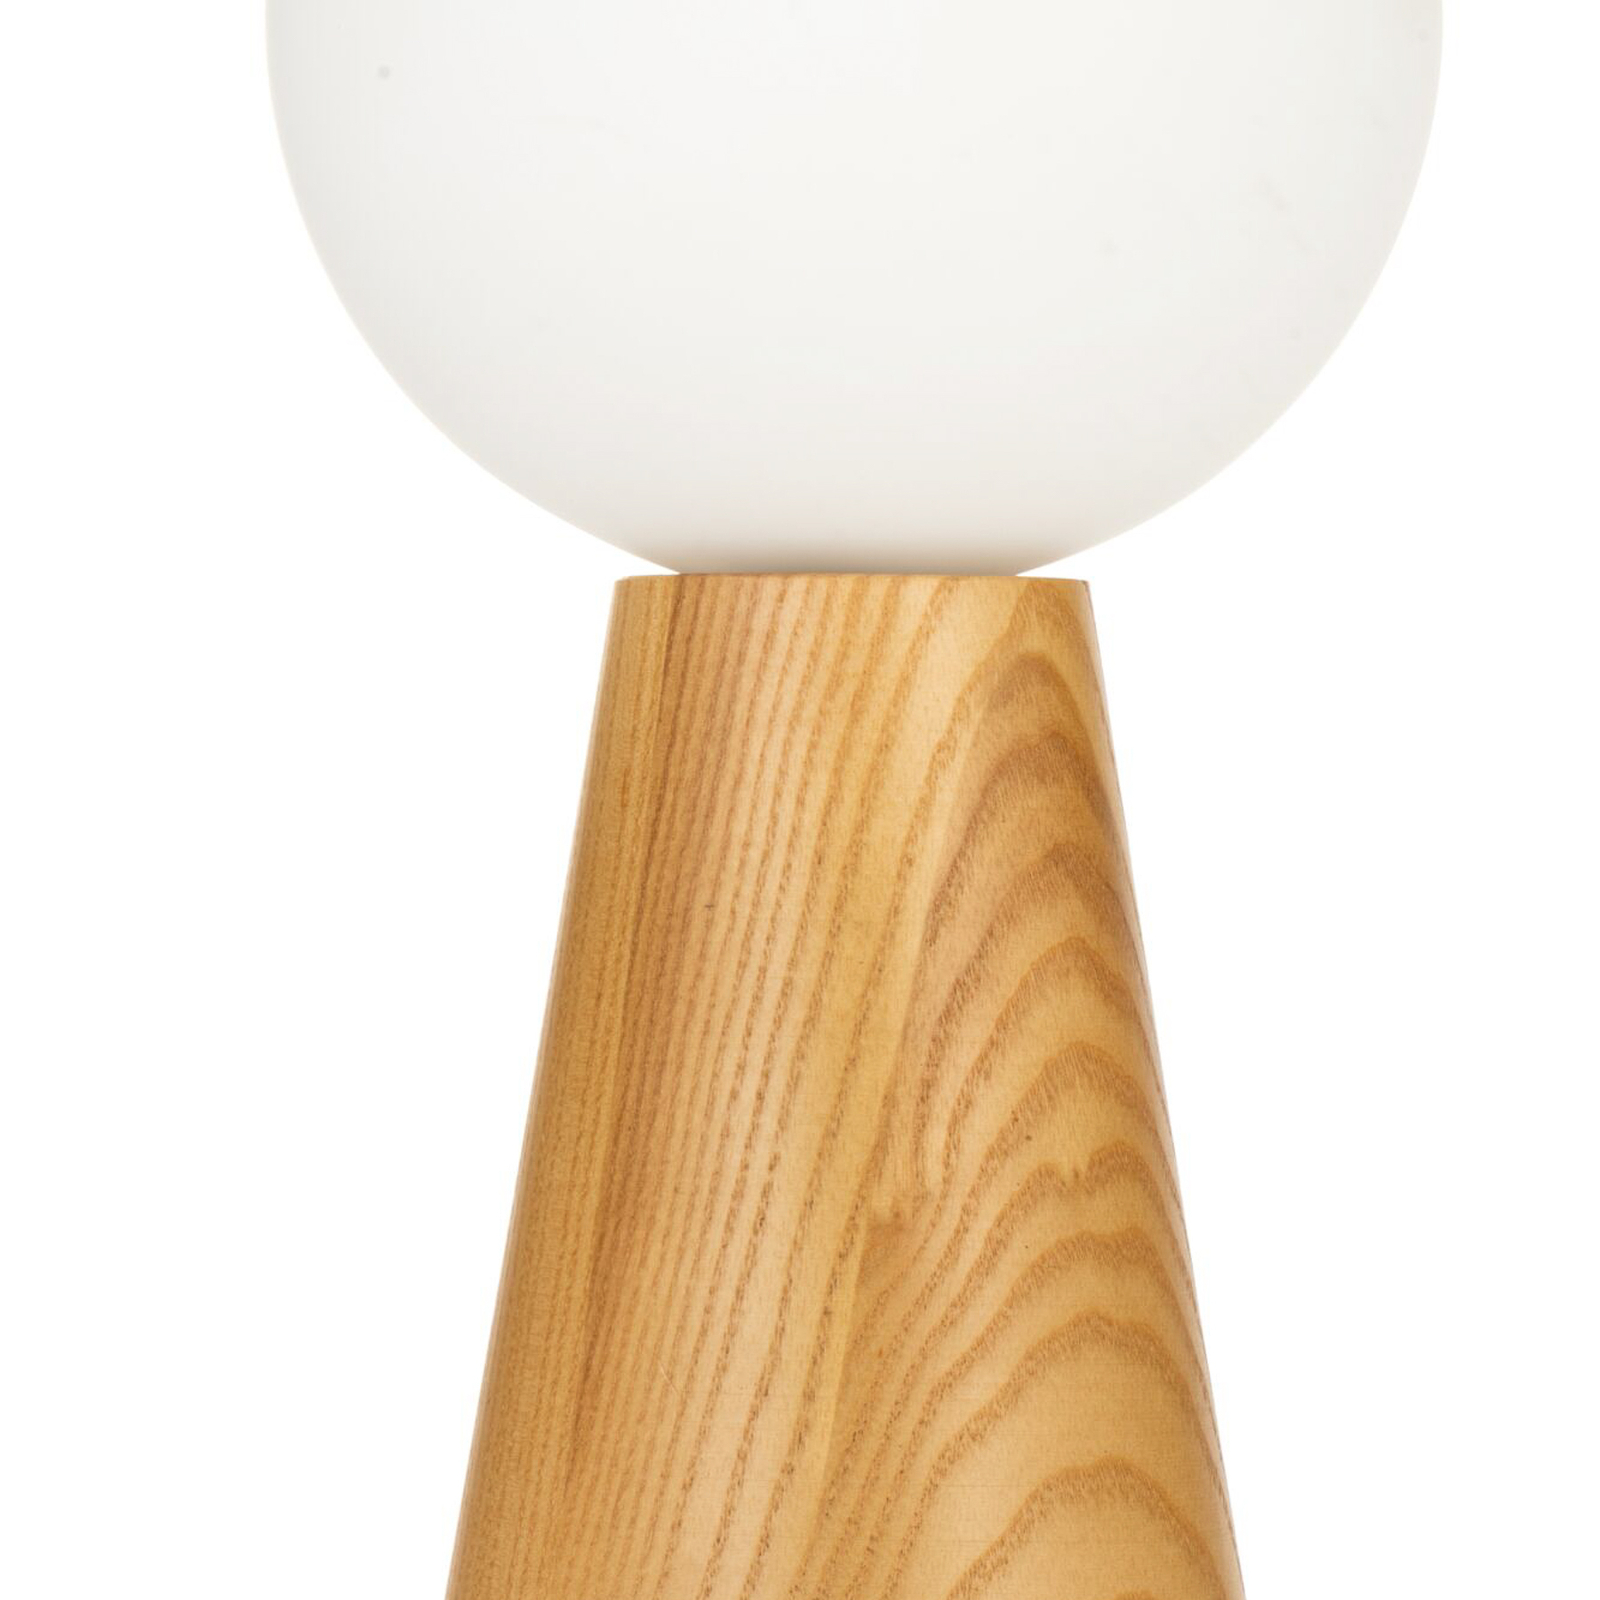 Pauleen Woody Soul stolní lampa, dřevo, sklo